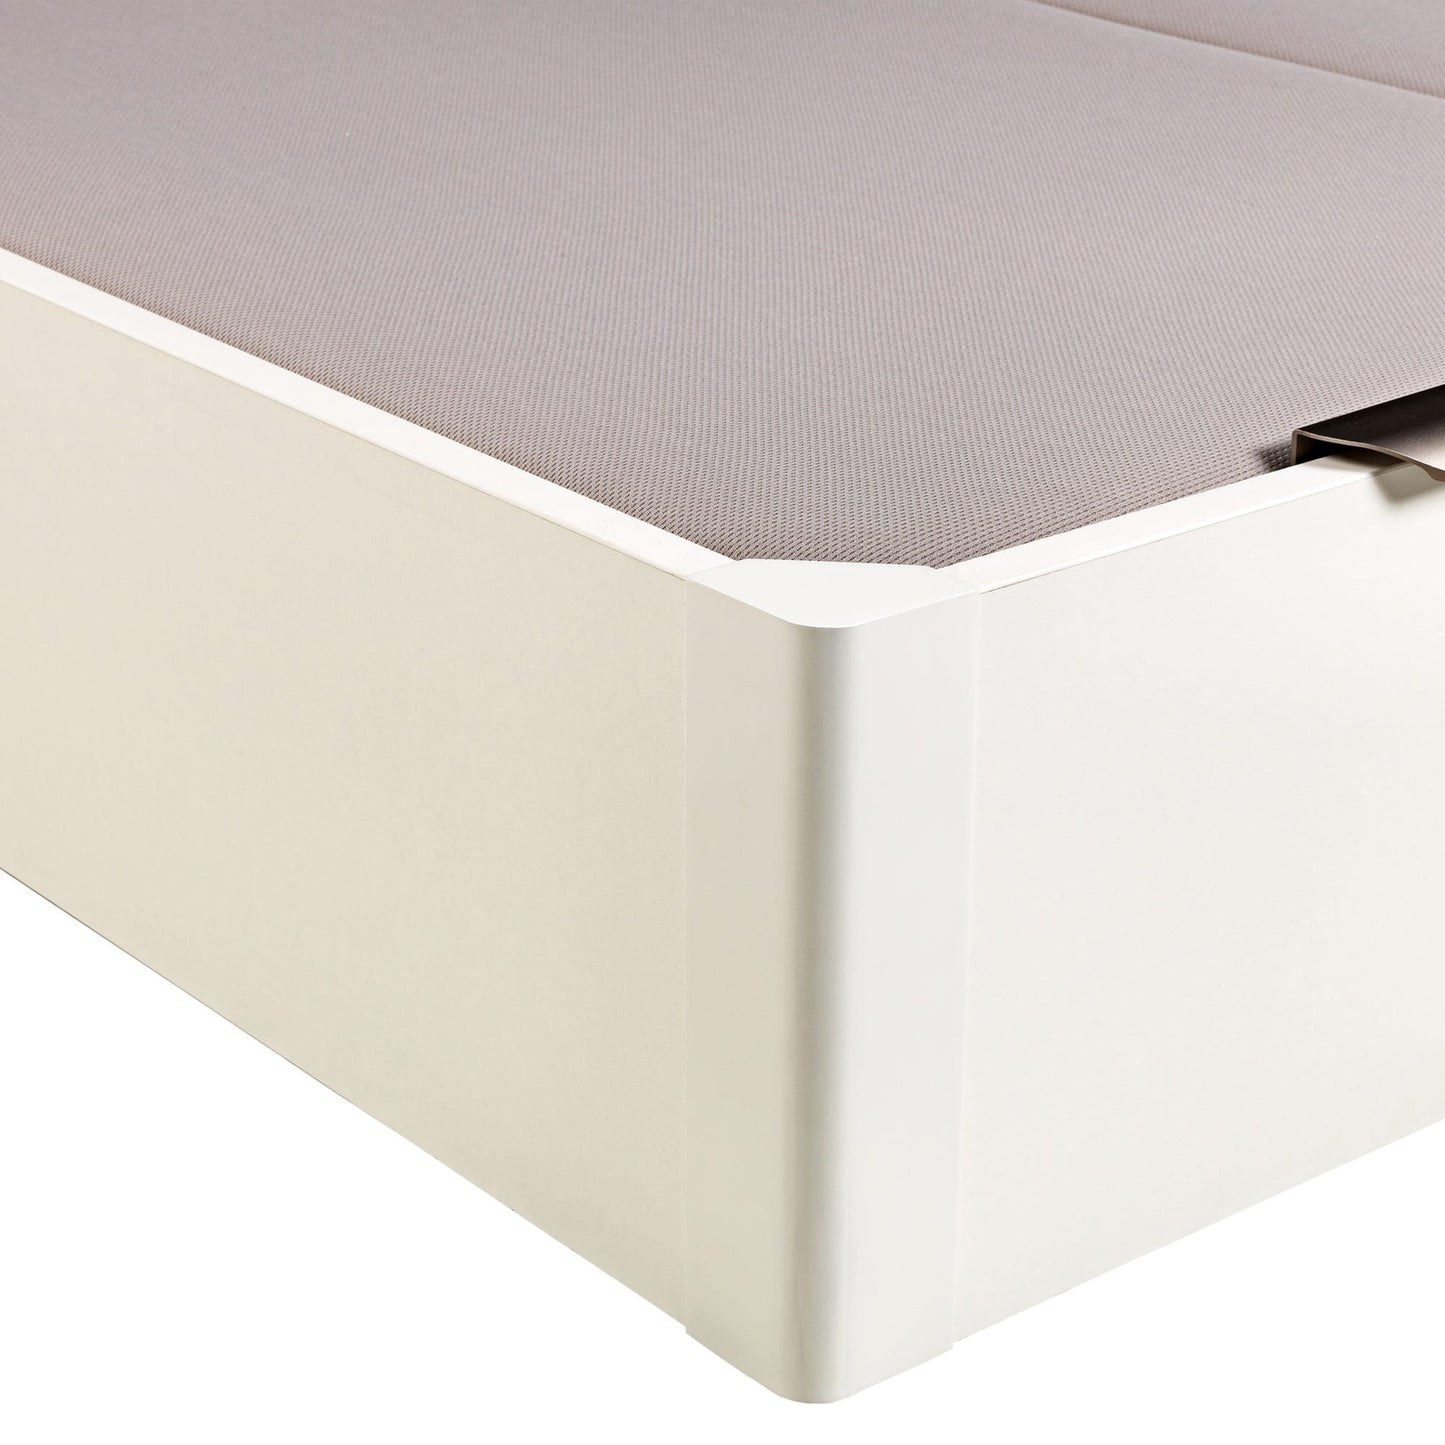 Canapé abatible de madera de tapa doble de color blanco - DESIGN - 200x182